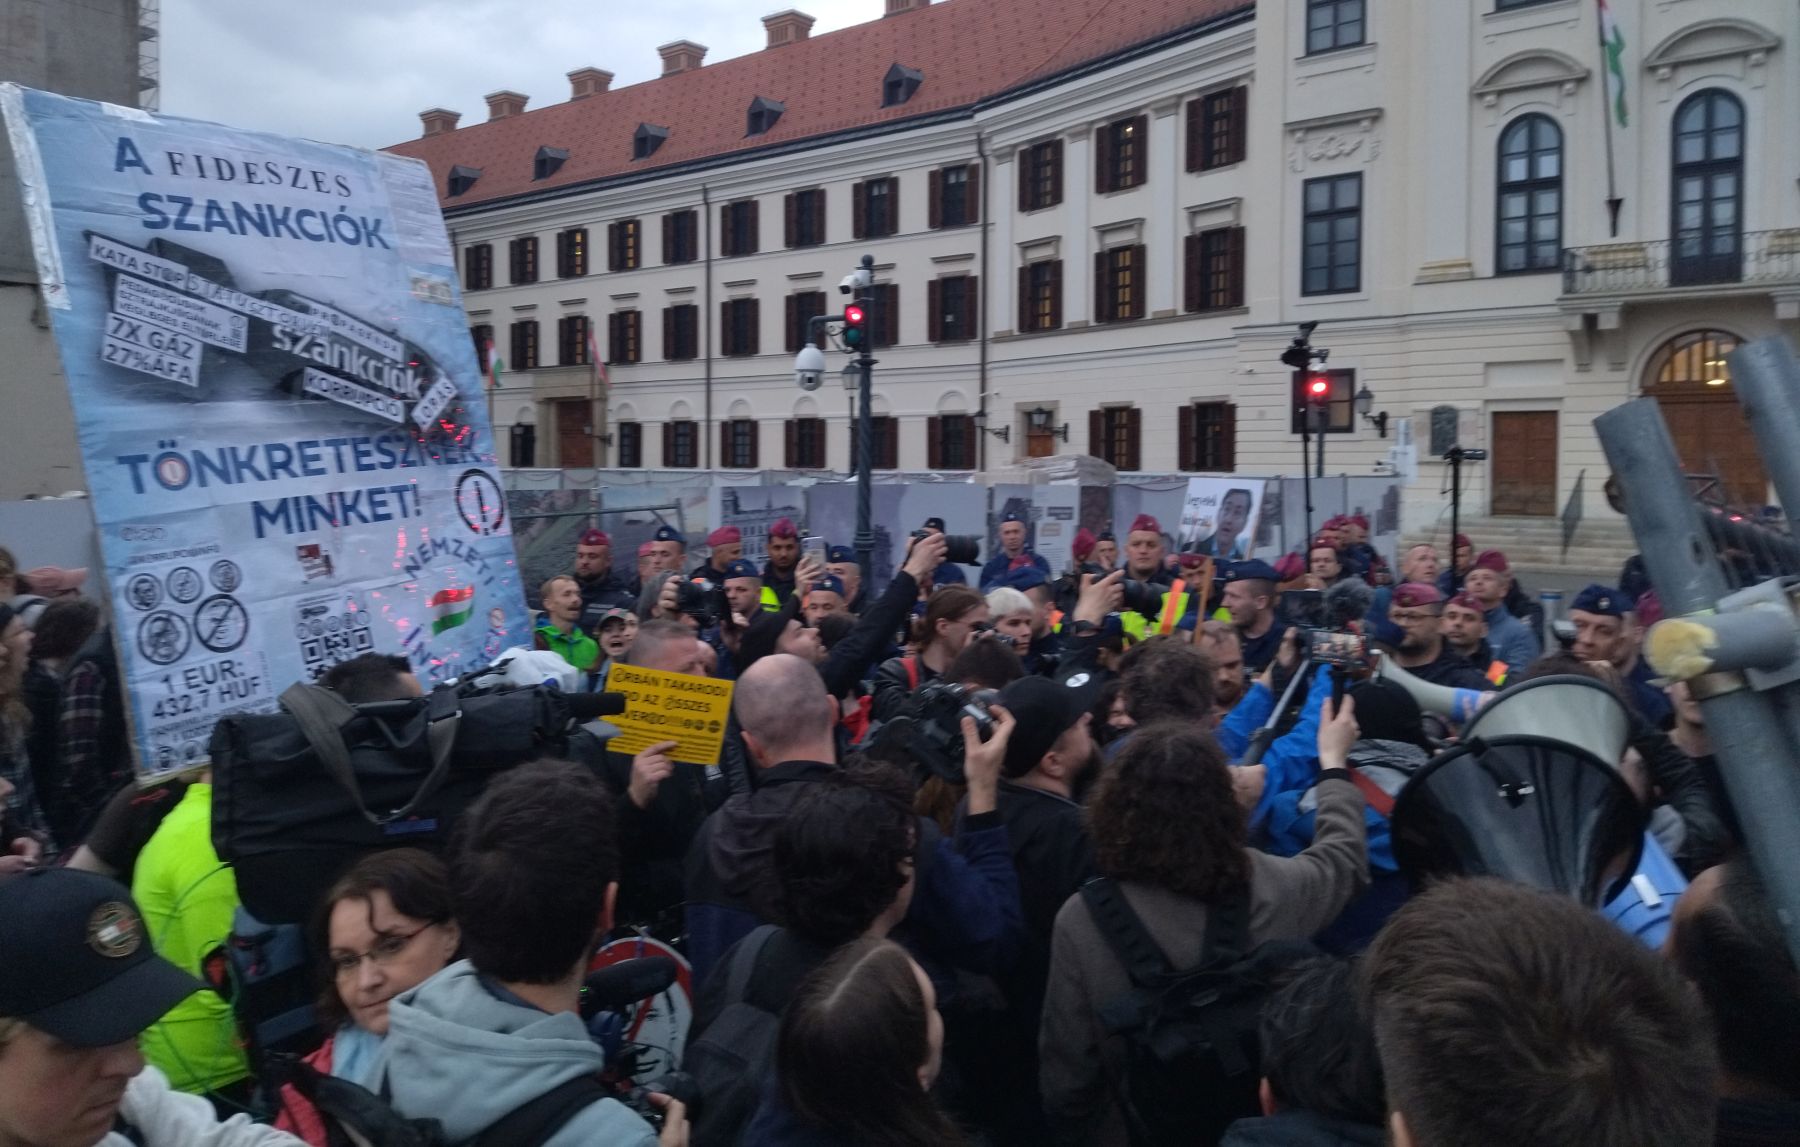 A Karmelitához vonultak a pedagógustüntetés résztvevői, a rendőrök könnygázt is bevetettek